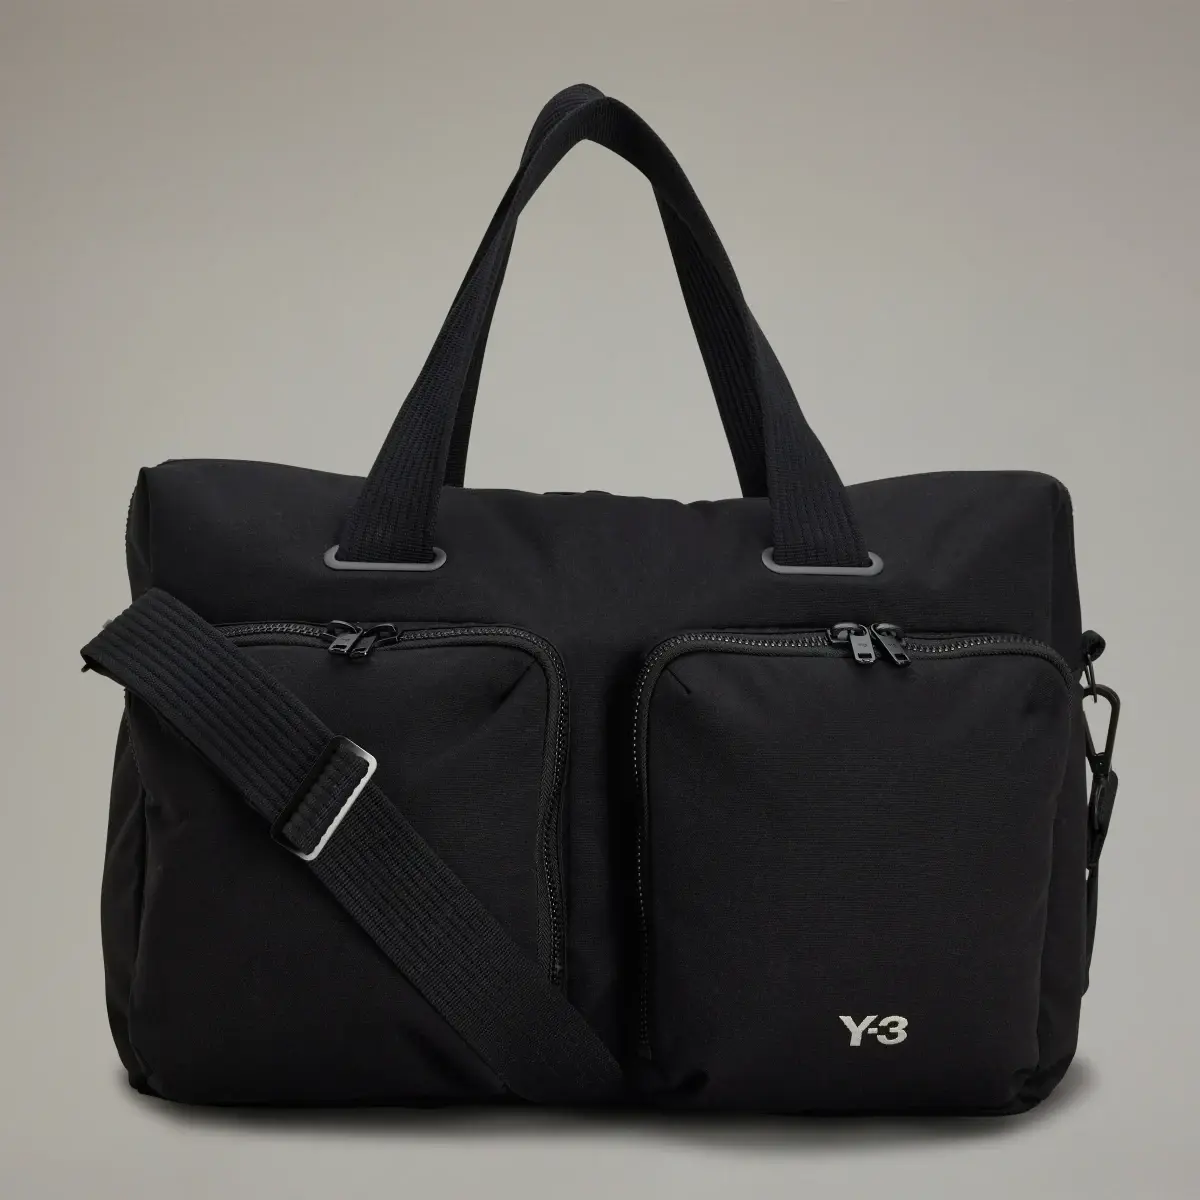 Adidas Y-3 Travel Bag. 2